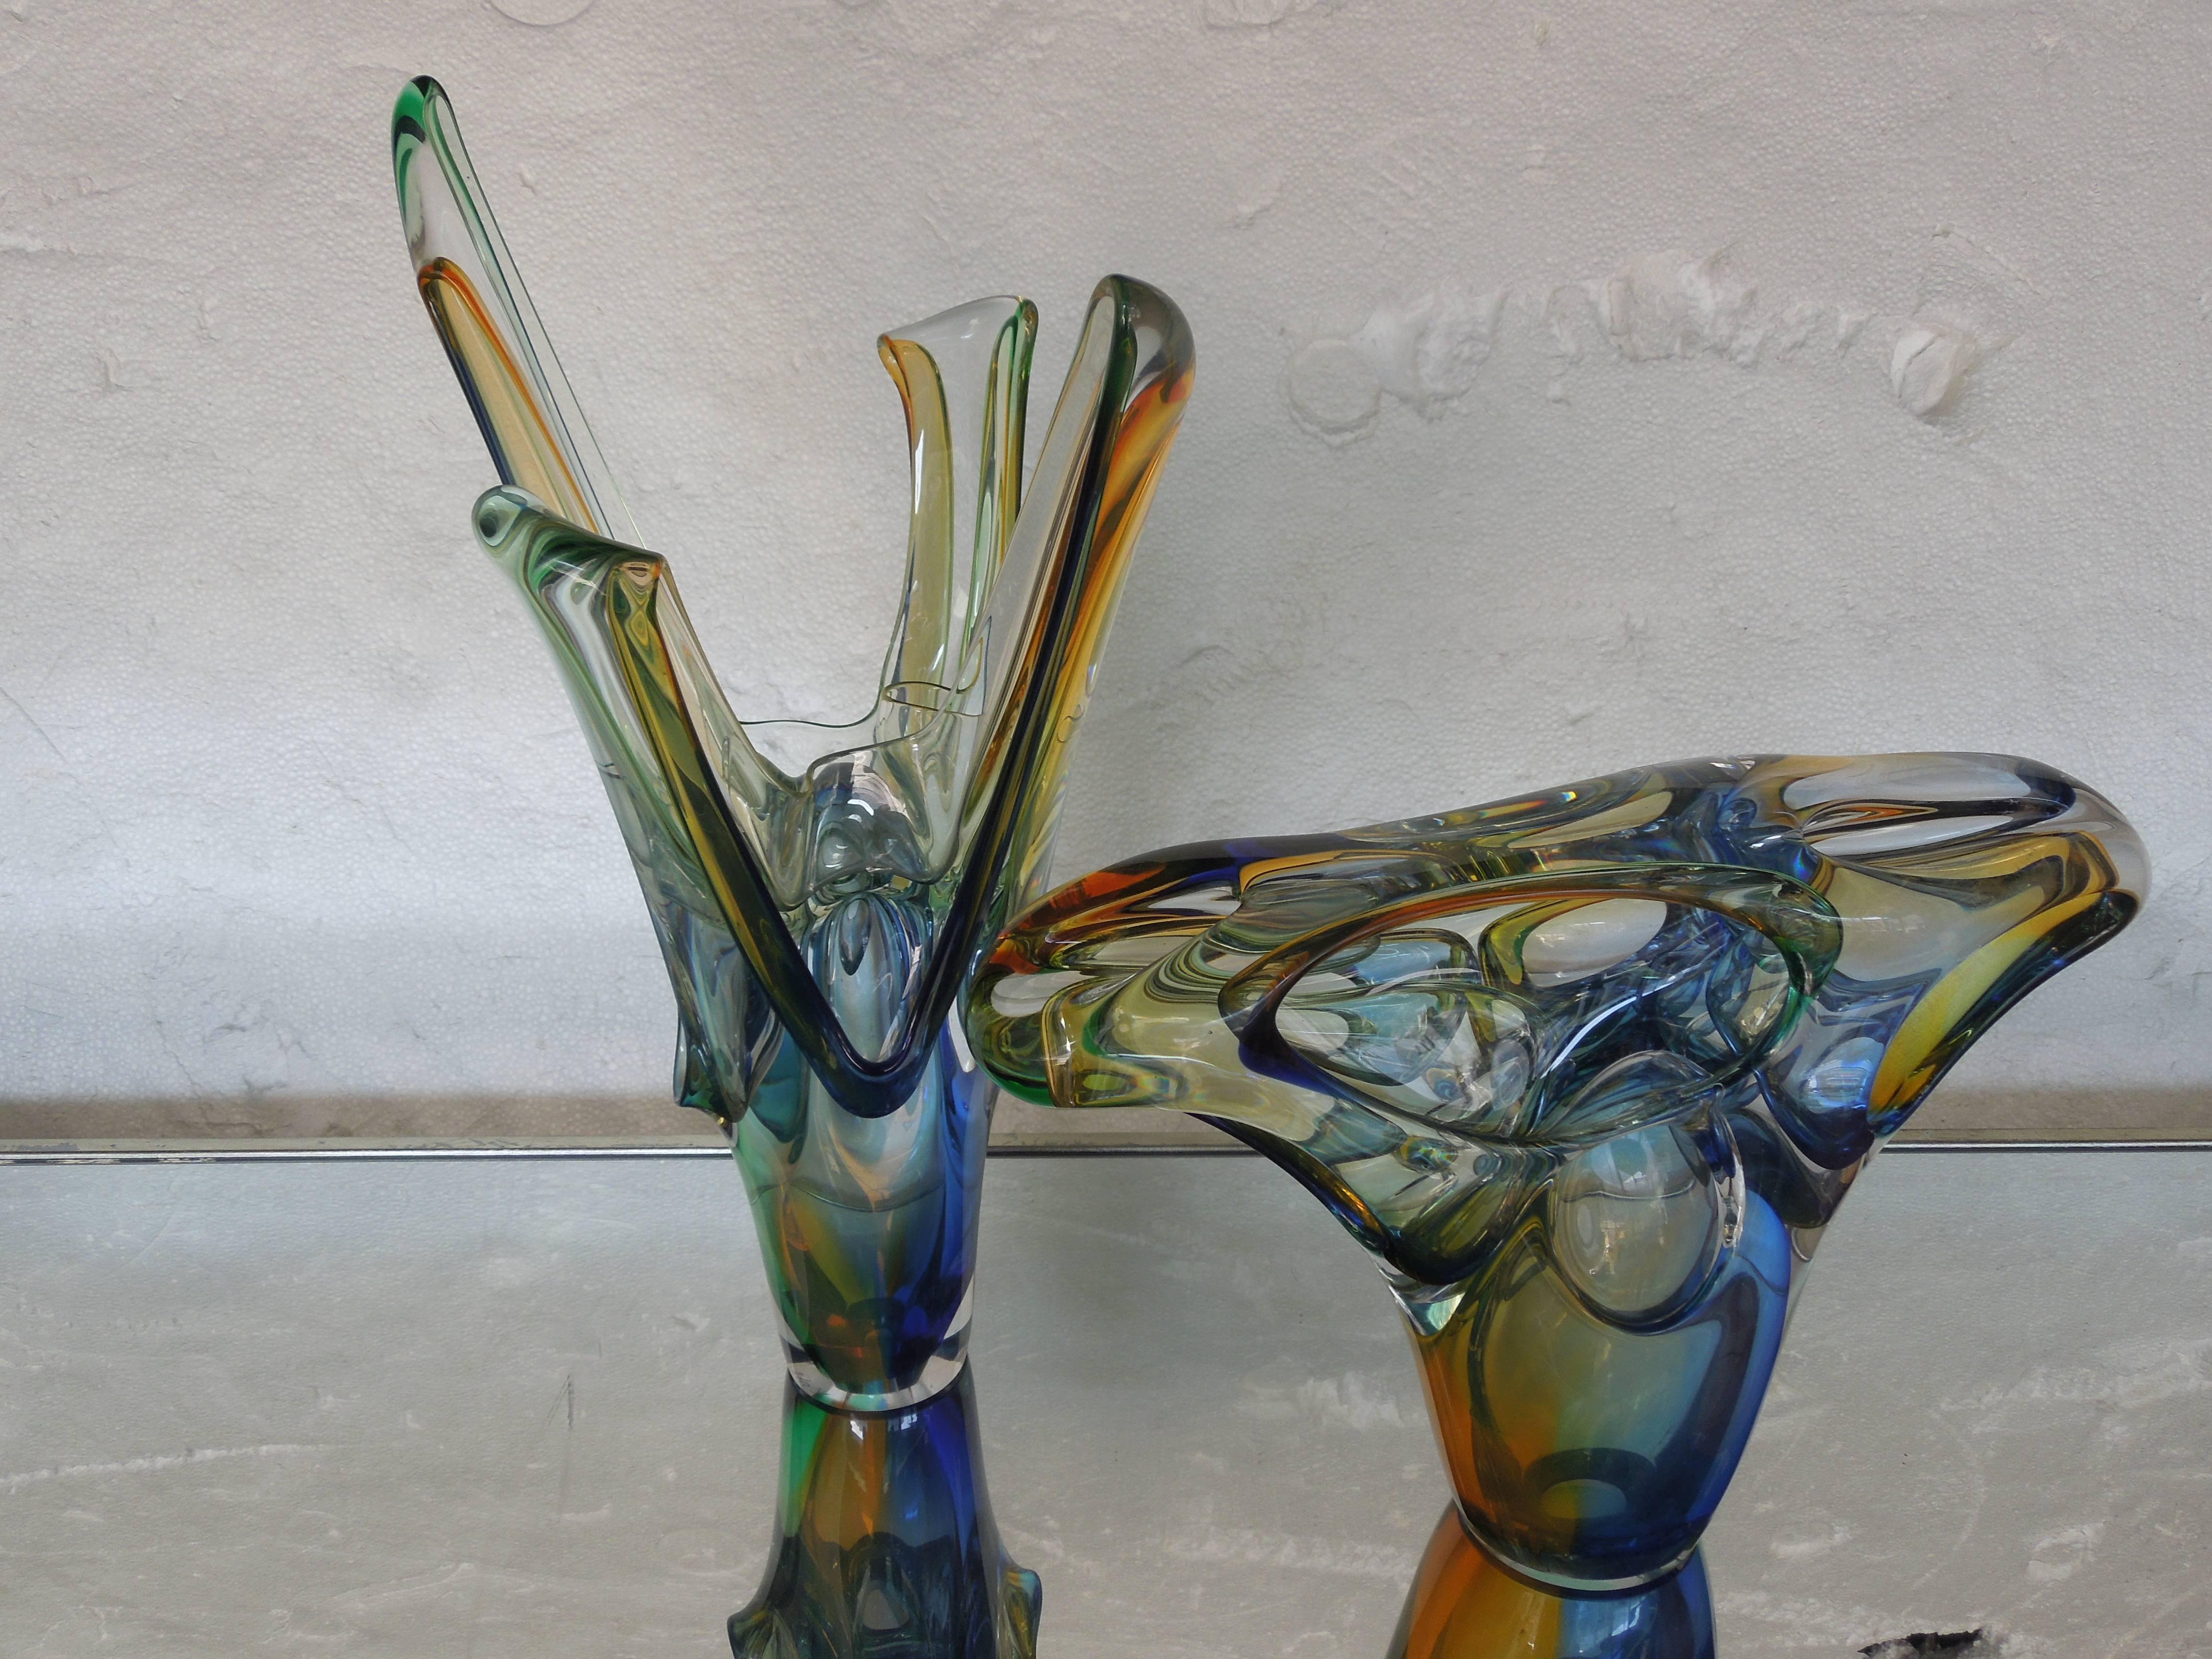 Une œuvre d'art en verre spectaculaire. Sculpture de A. Jablanski. La pièce multicolore (bleu, ambre, vert) est étonnante sous tous les angles. Cette pièce provient d'une propriété de plusieurs millions de dollars située à Rancho Mirage, en